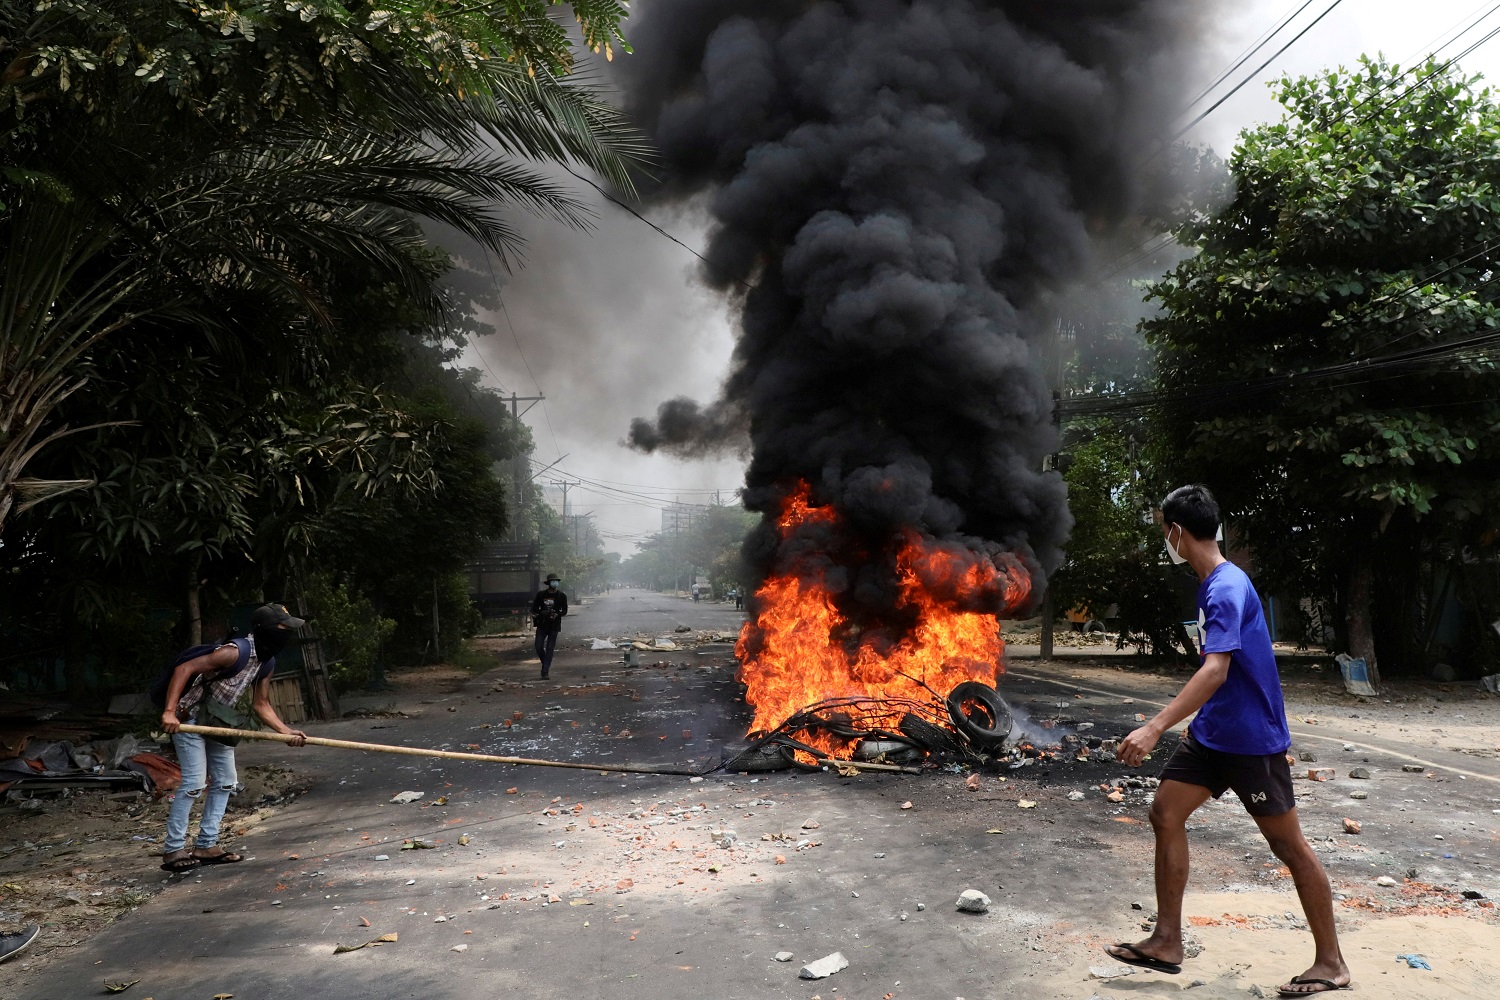 متظاهر مناهض للانقلاب يمشي بالقرب من إطارات محترقة في يانغون . ميانمار .30 مارس / آذار 2021.(رويترز)